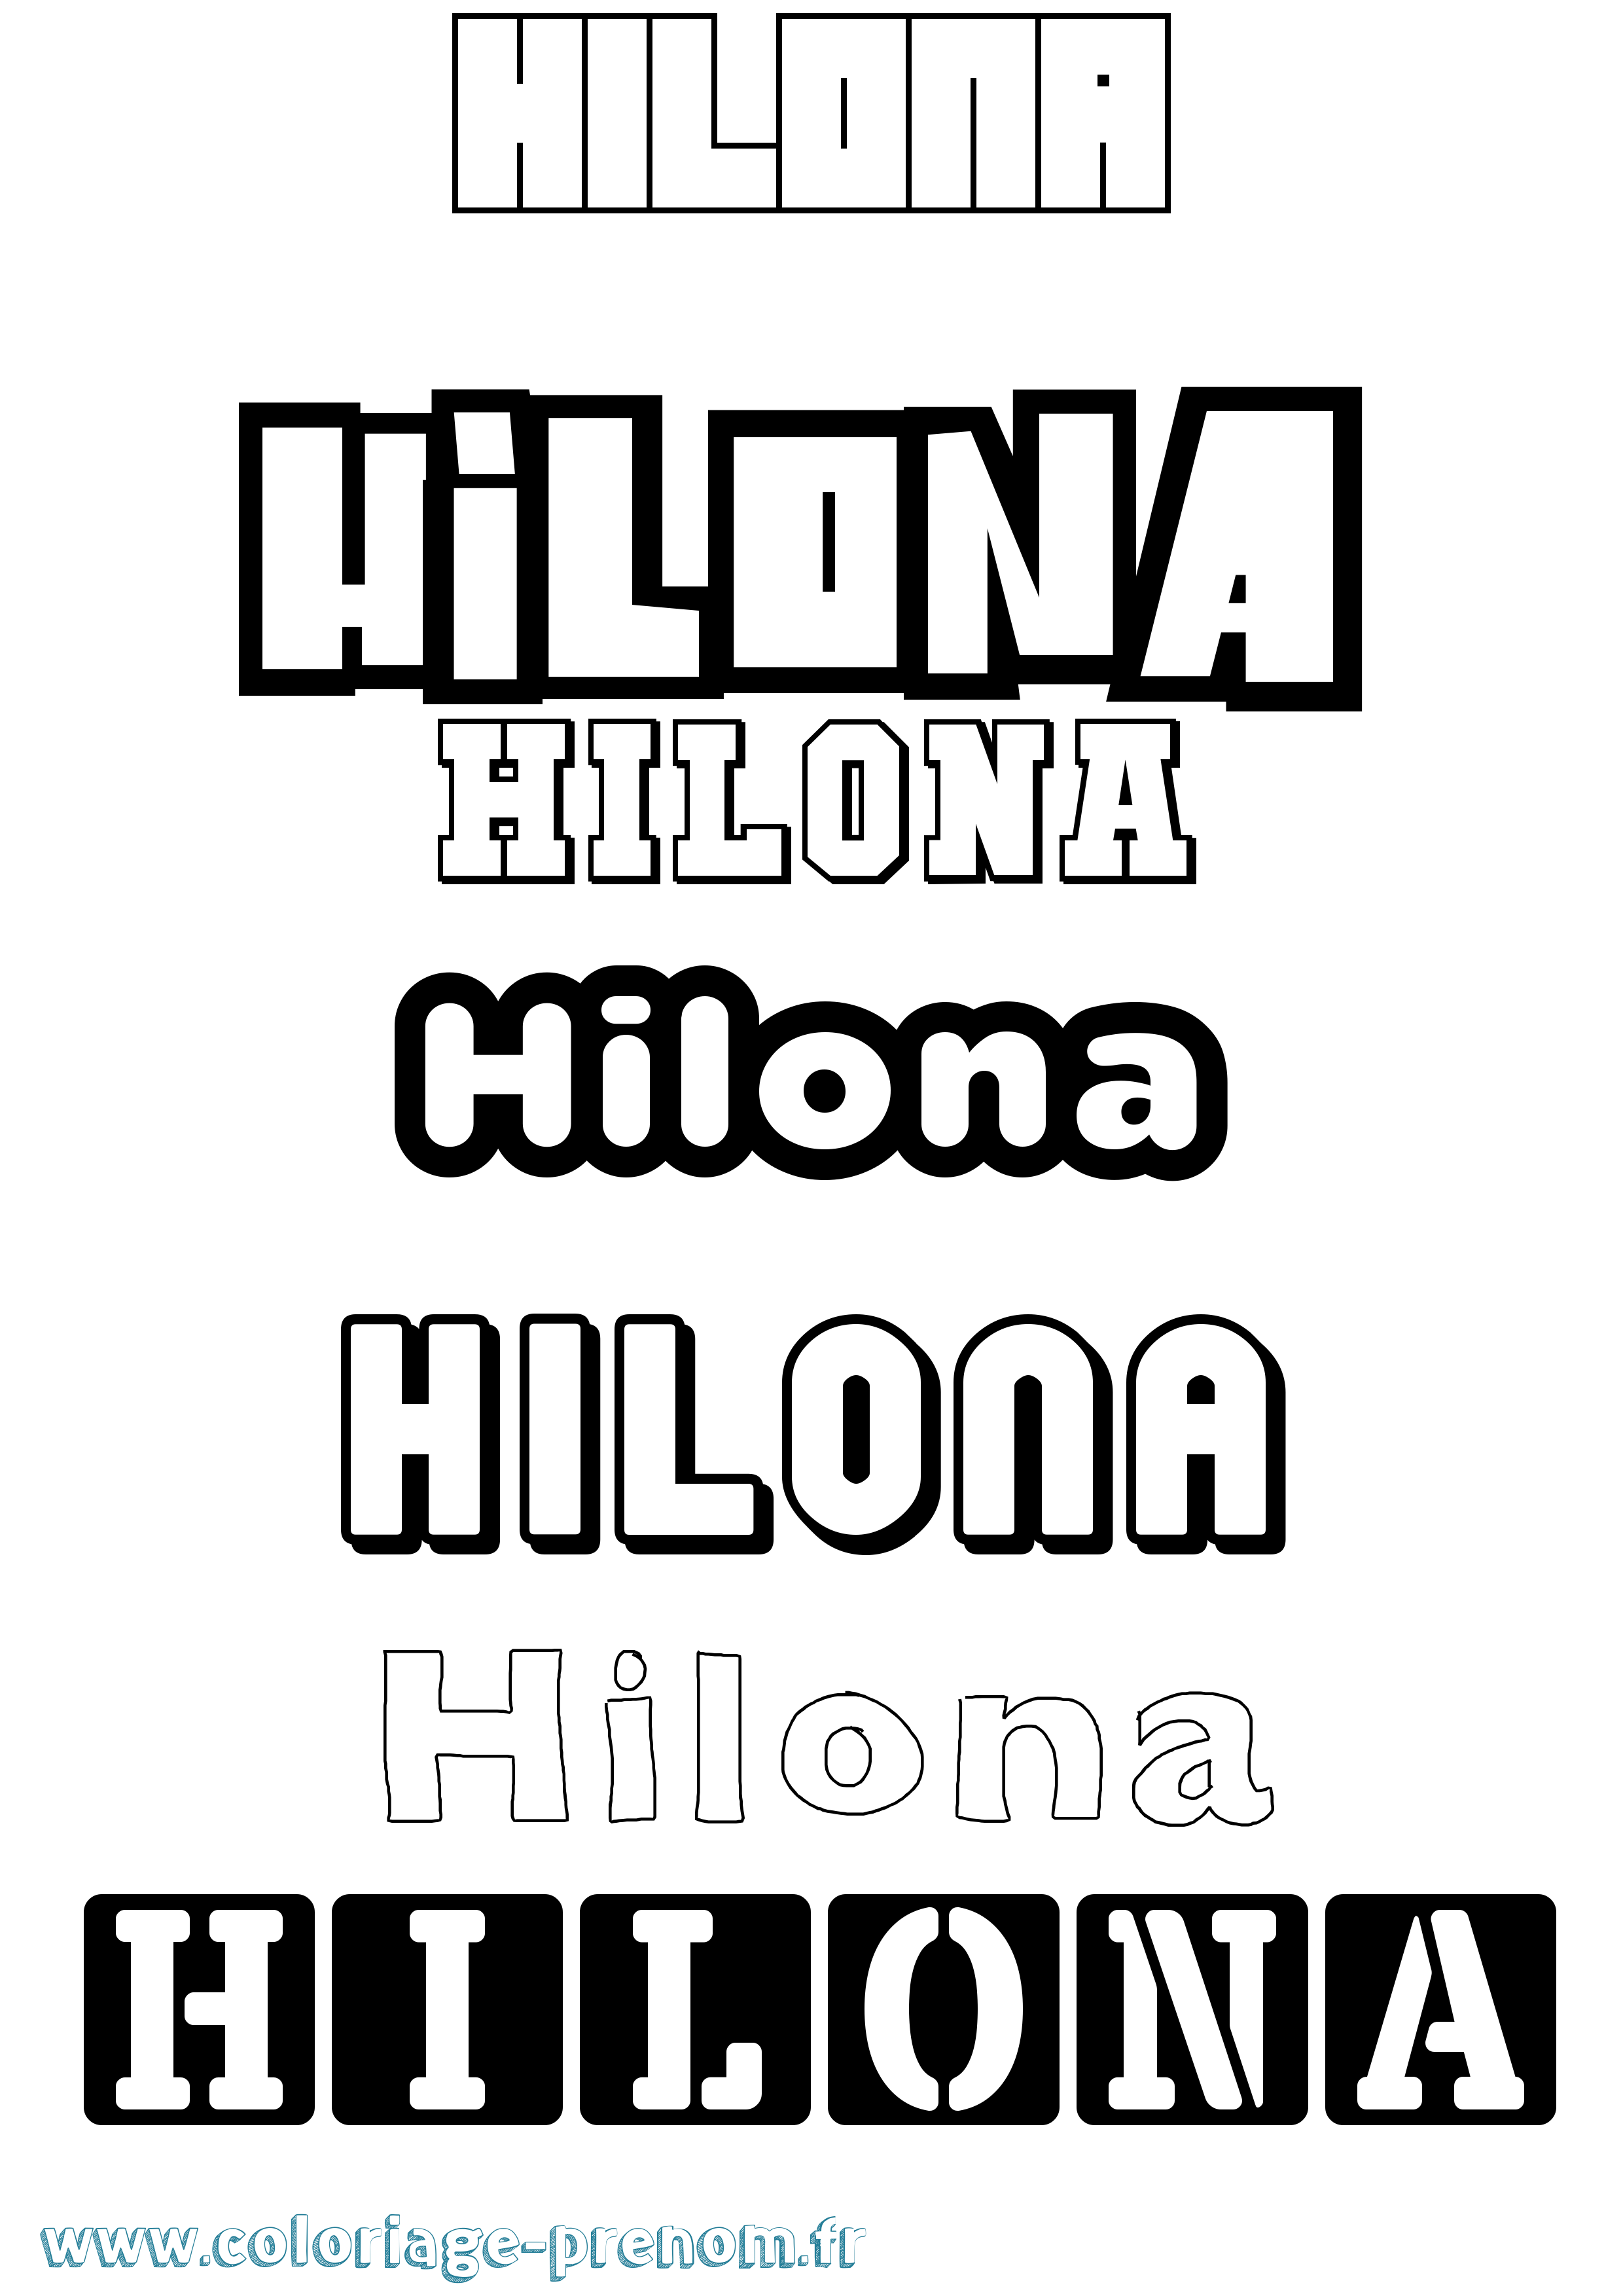 Coloriage prénom Hilona Simple